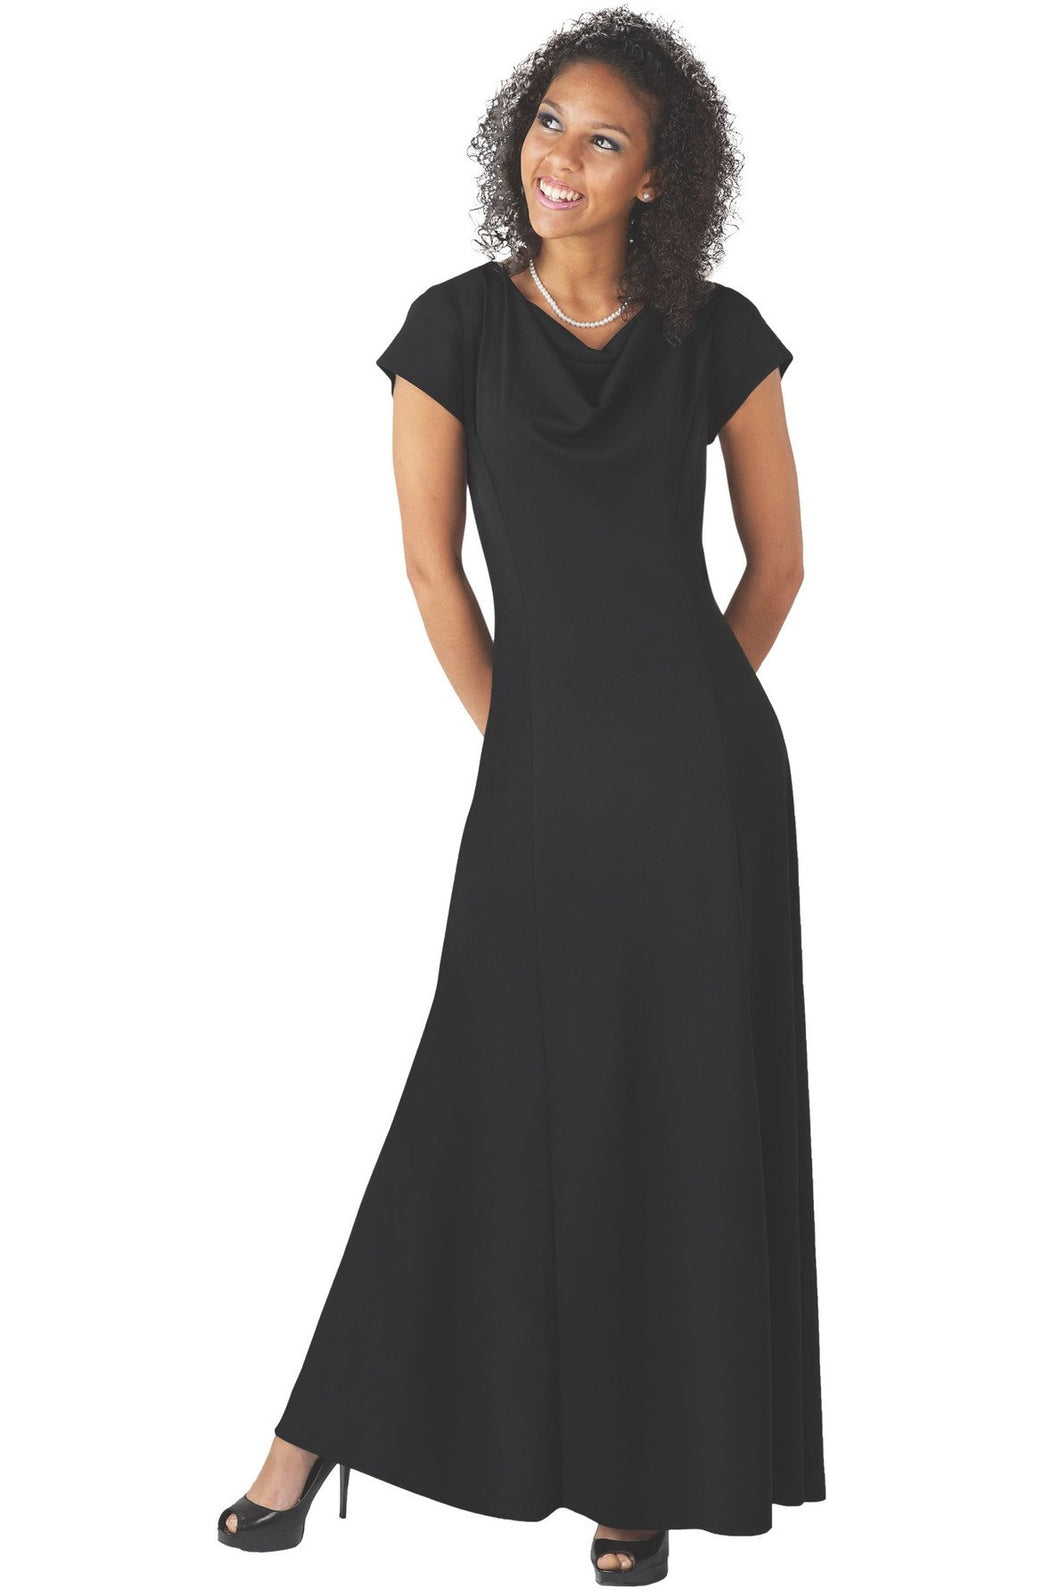 Nellie Dress sizes 0-18